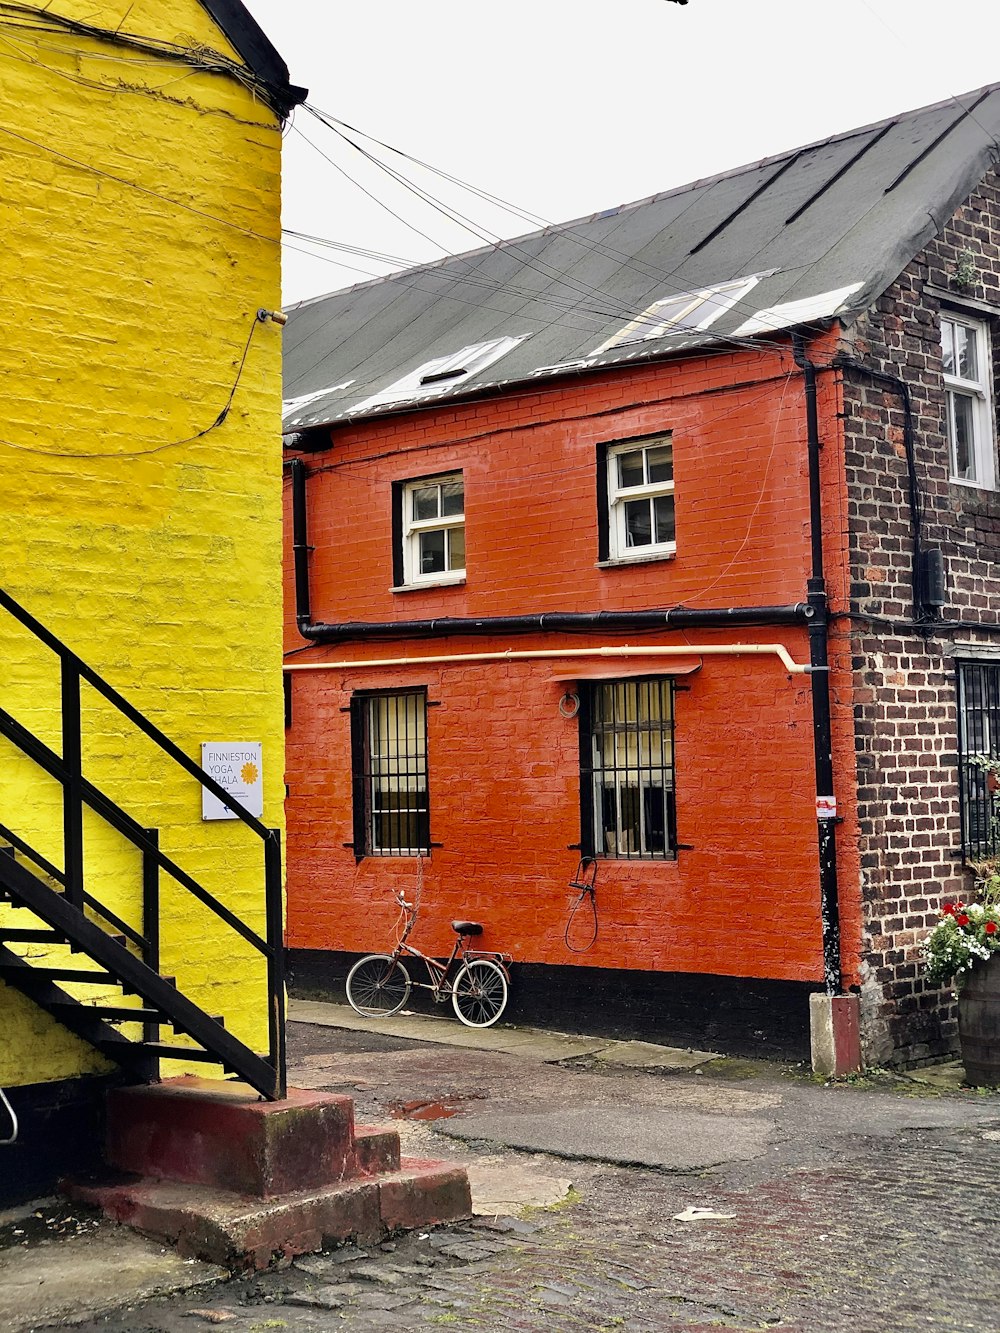 앞에 자전거가 주차된 빨간색과 노란색 건물